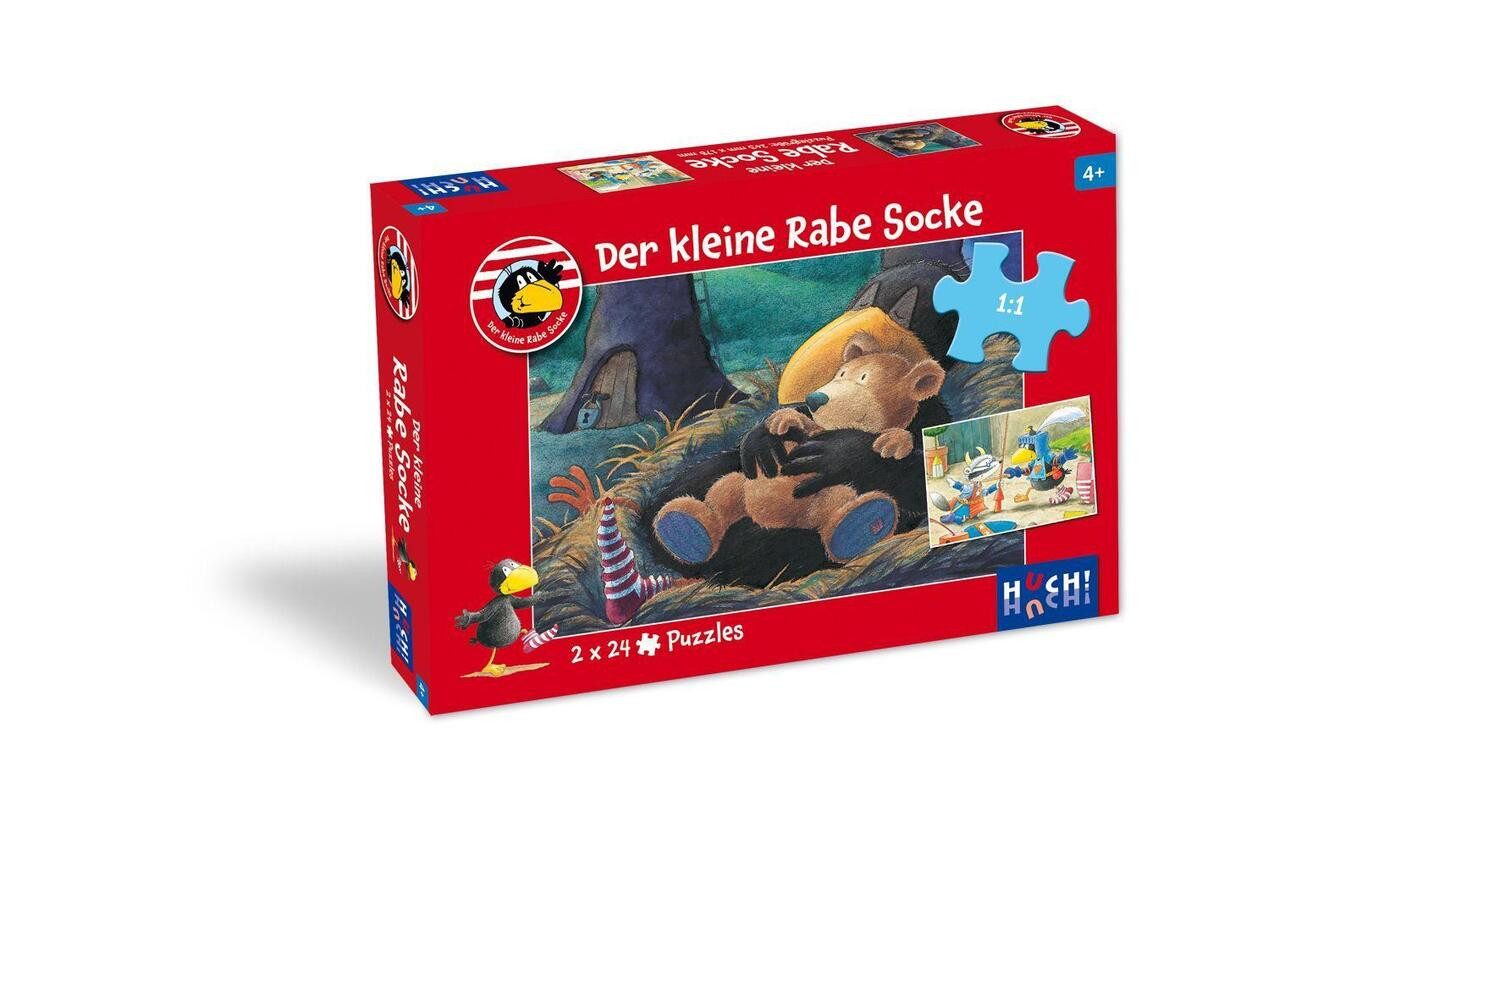 HUCH! Puzzle Der kleine Rabe Socke - Puzzle 1. 2 Puzzle mit 24 Teilen, 24 Puzzleteile